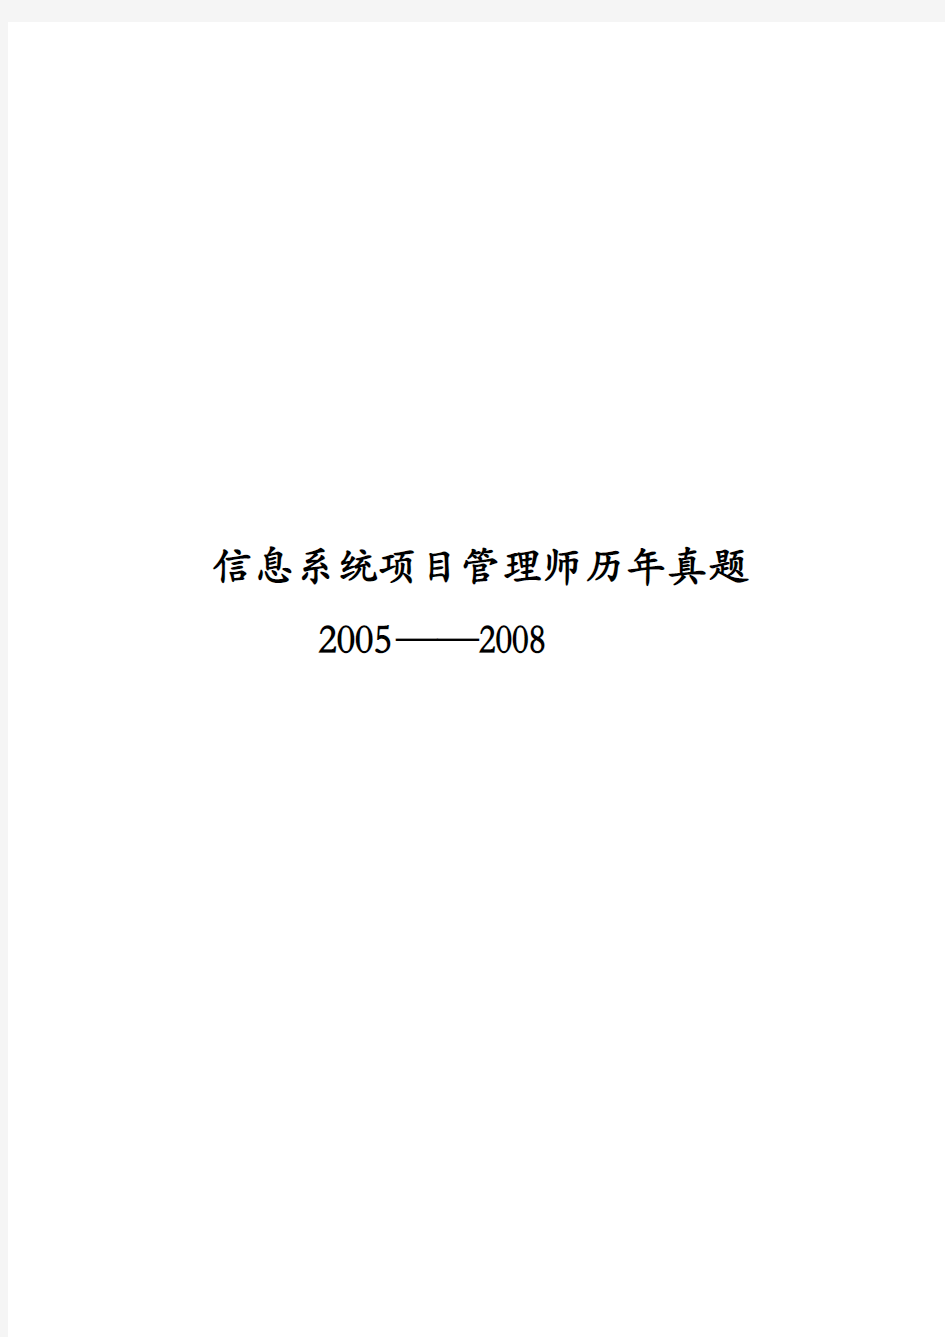 2005-2008信息系统项目管理师试题(Word打印版)